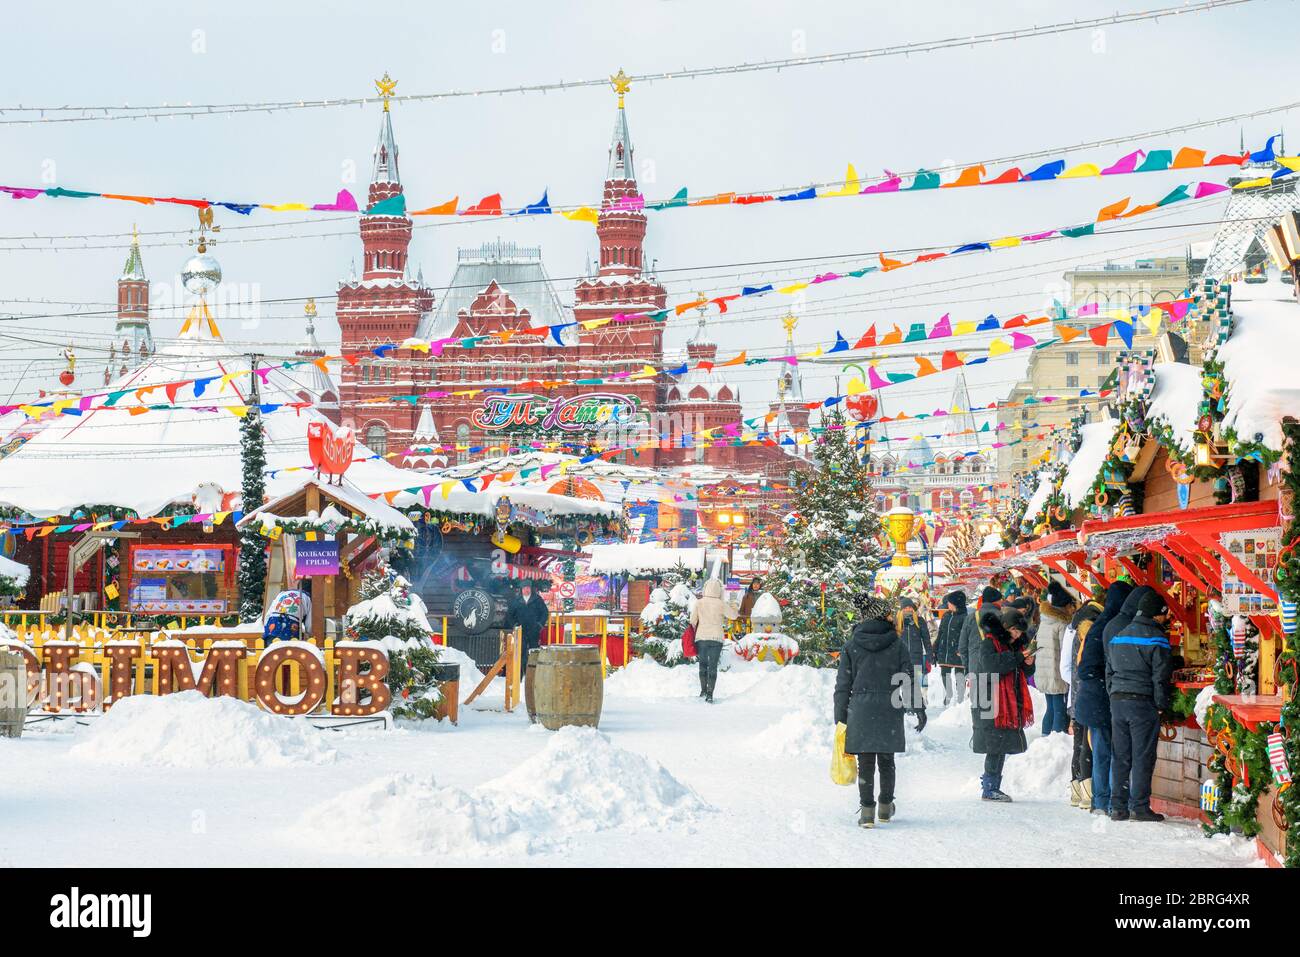 Moscou, Russie - 5 février 2018 : décor de la place Rouge festive en hiver à Moscou. Décorations de Noël près du Kremlin de Moscou pendant la neige. Nouveau y Banque D'Images